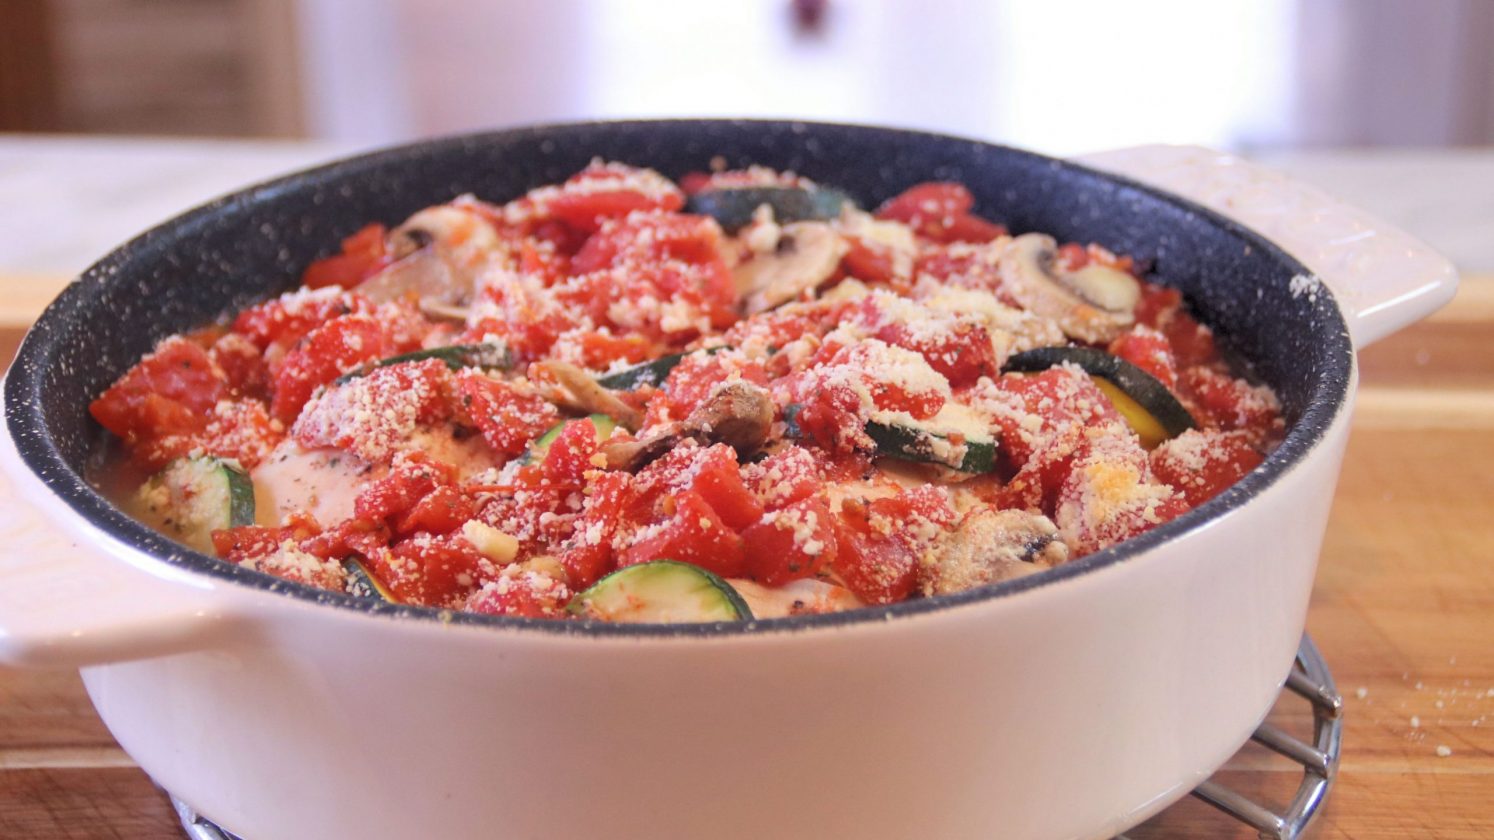 zucchini “pasta” with chicken, white wine, & tomatoes